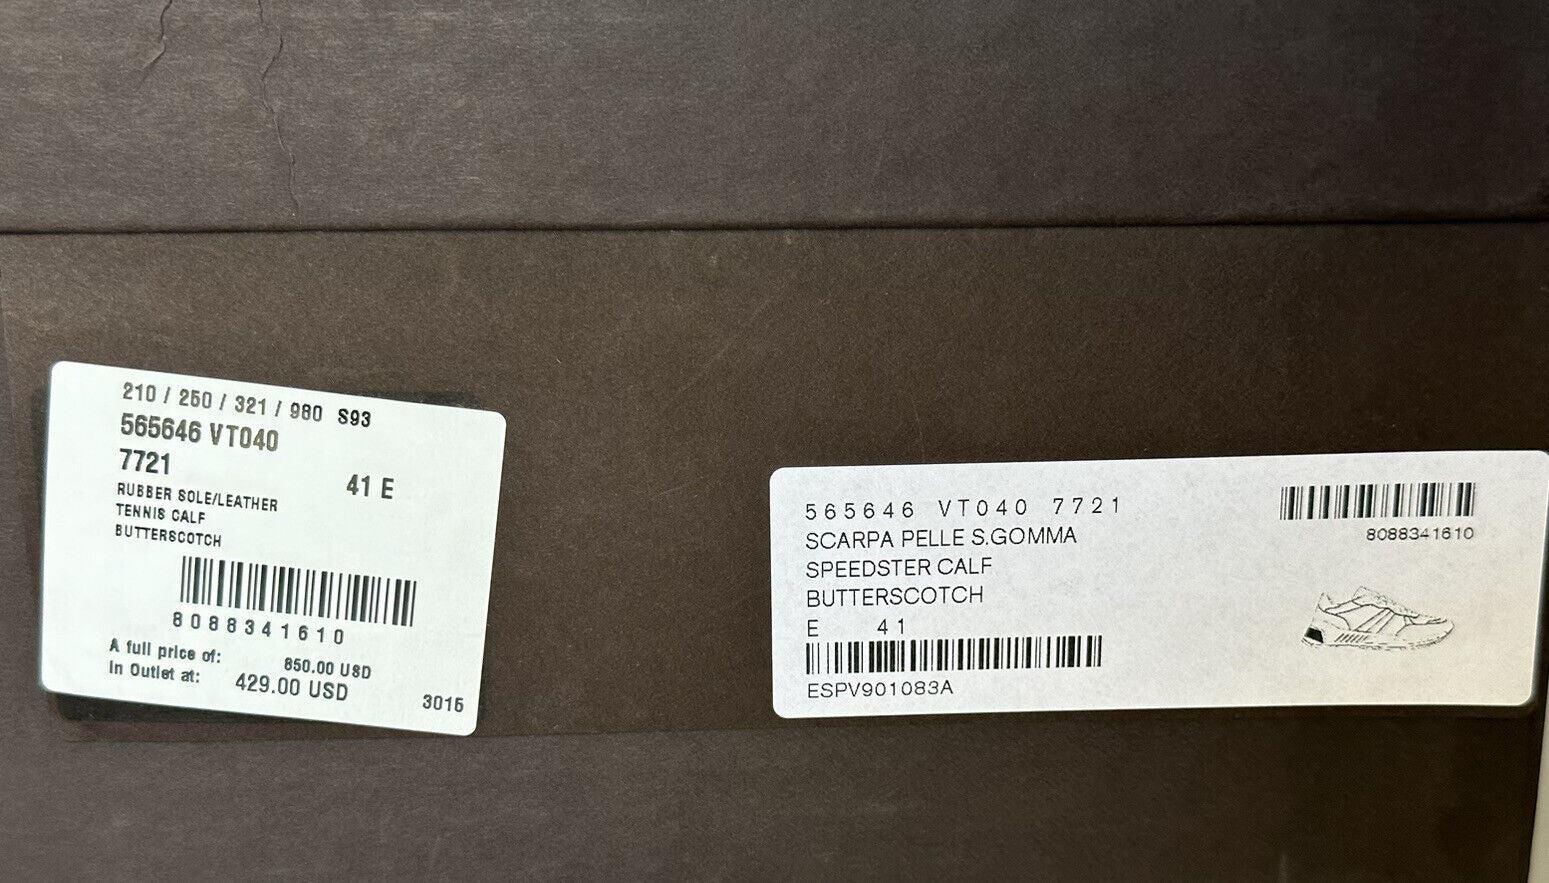 Мужские кожаные кроссовки «Ириска» Bottega Veneta за 850 долларов США 8 США 565646 7721 